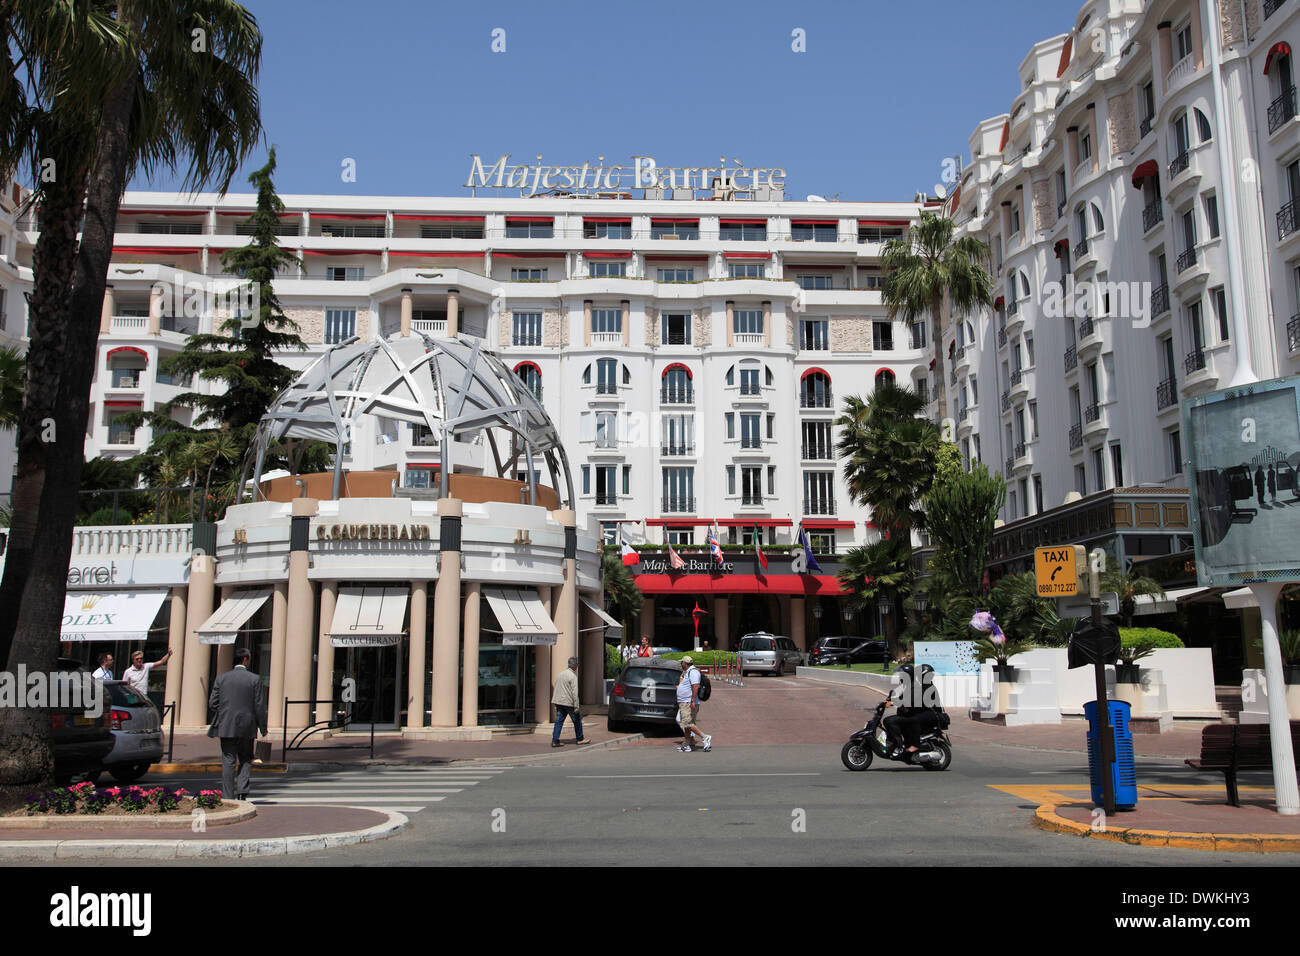 Hôtel Majestic Barrière, La Croisette, Cannes, Cote d'Azur, Provence, Côte d'Azur, France, Europe Banque D'Images